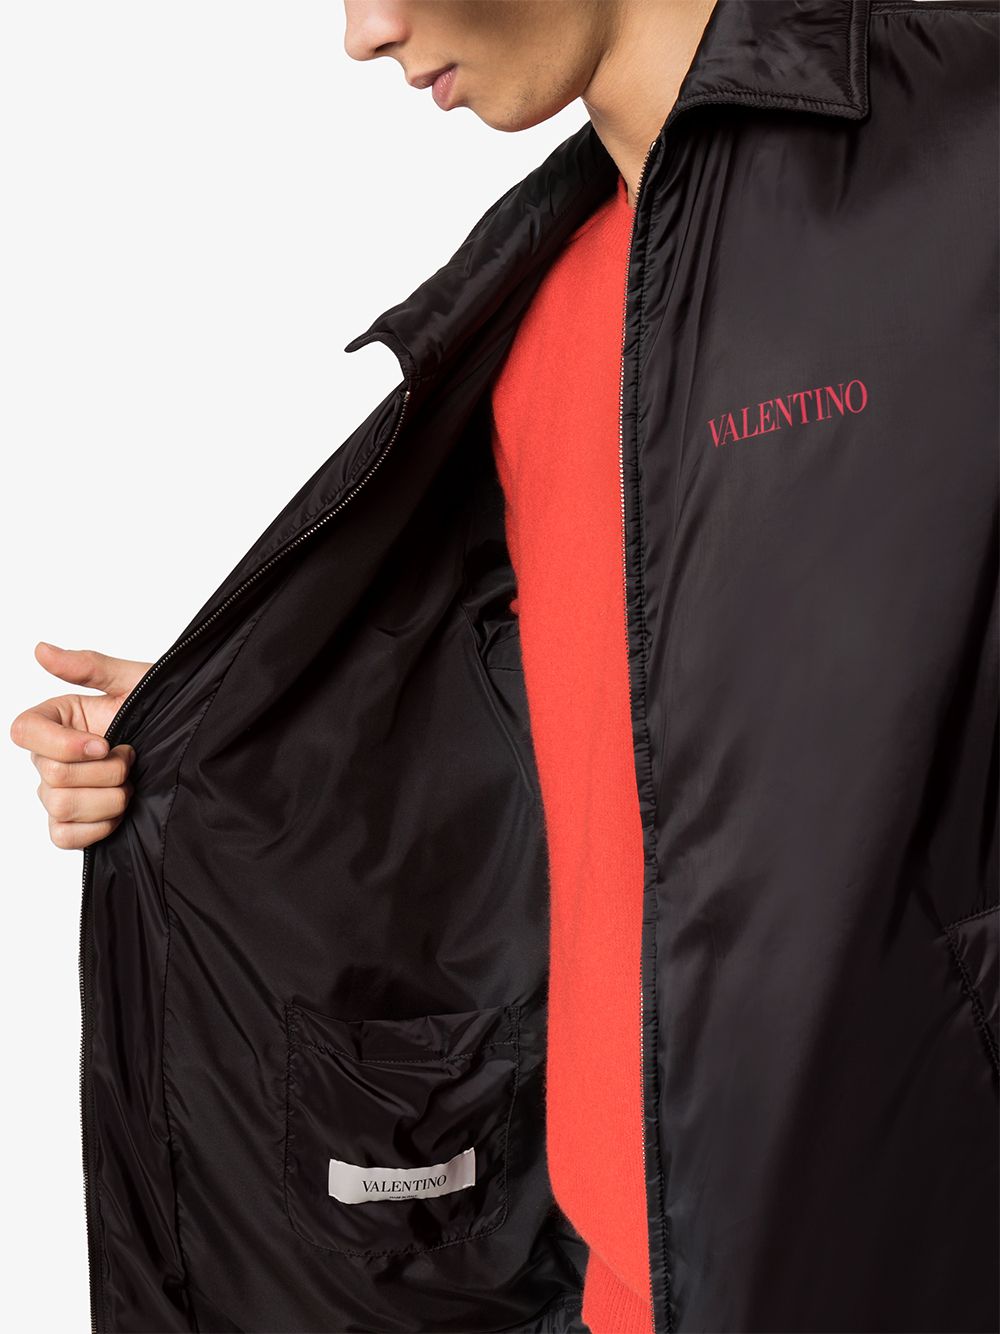 фото Valentino ветровка с логотипом